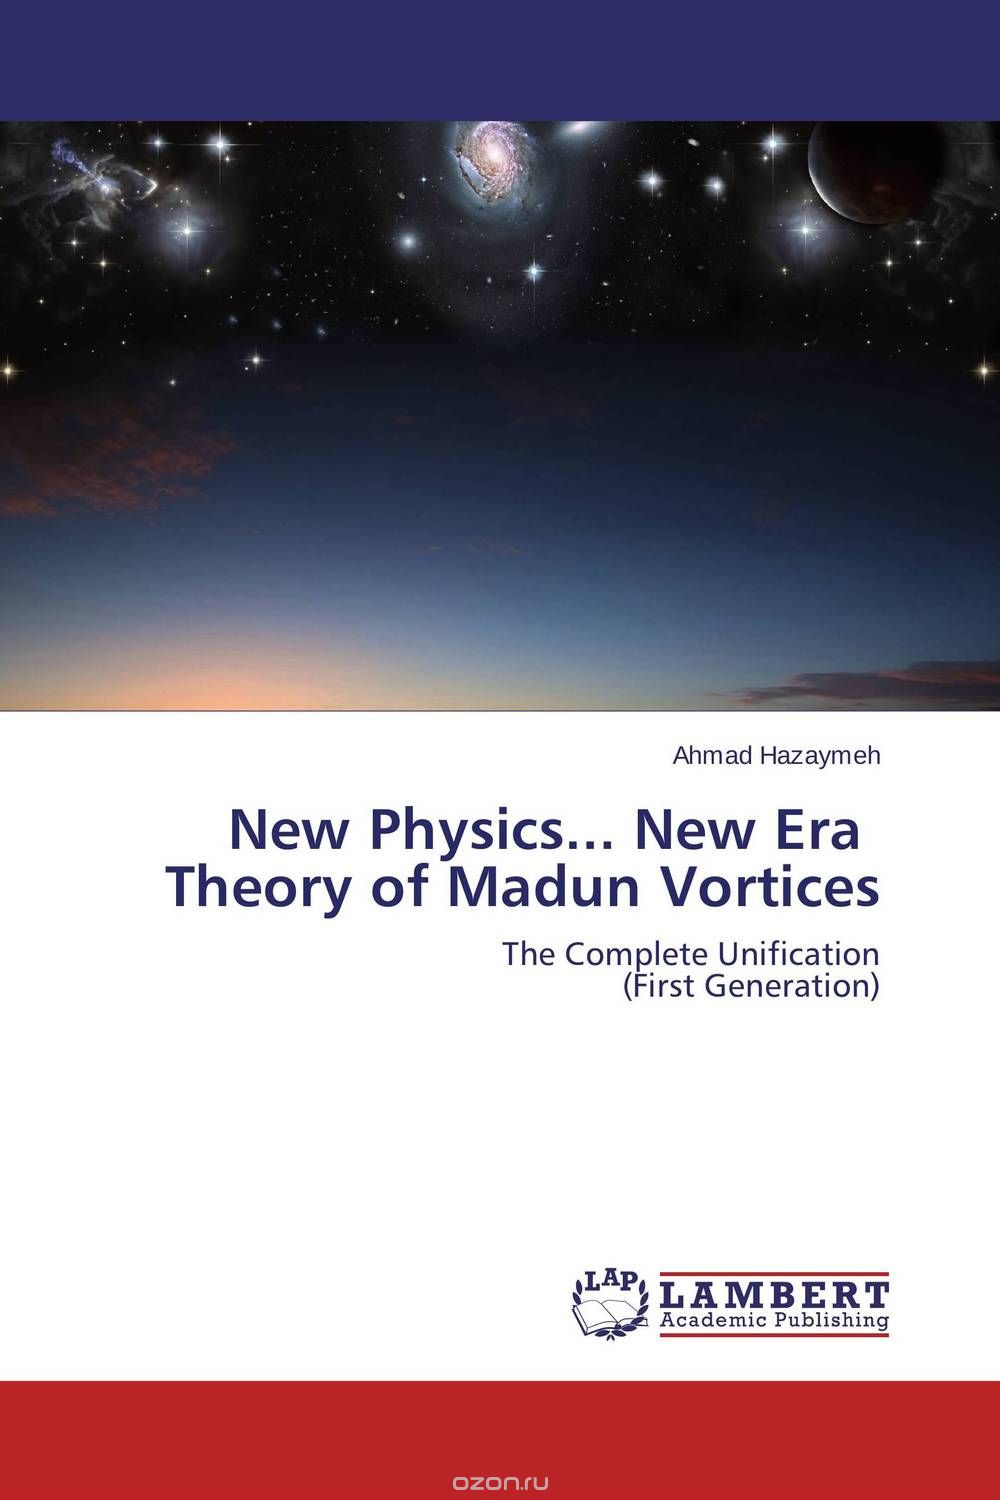 Скачать книгу "New Physics... New Era   Theory of Madun Vortices"